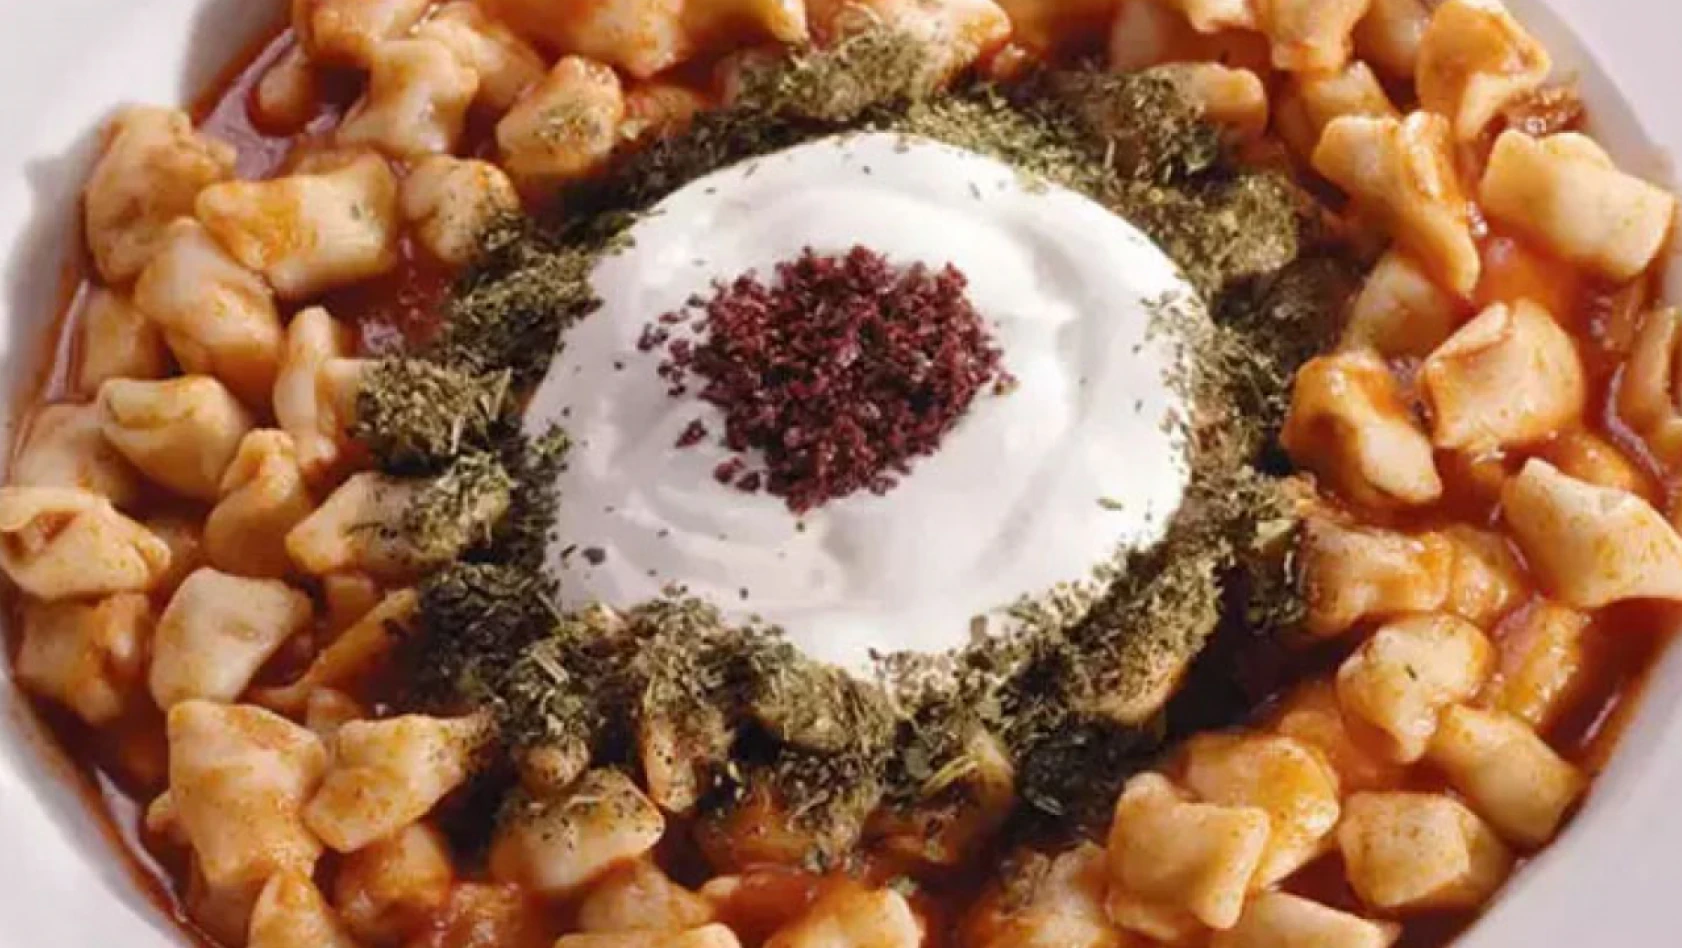 Kayseri'nin en meşhur yemeği dünya listelerinde yer aldı!